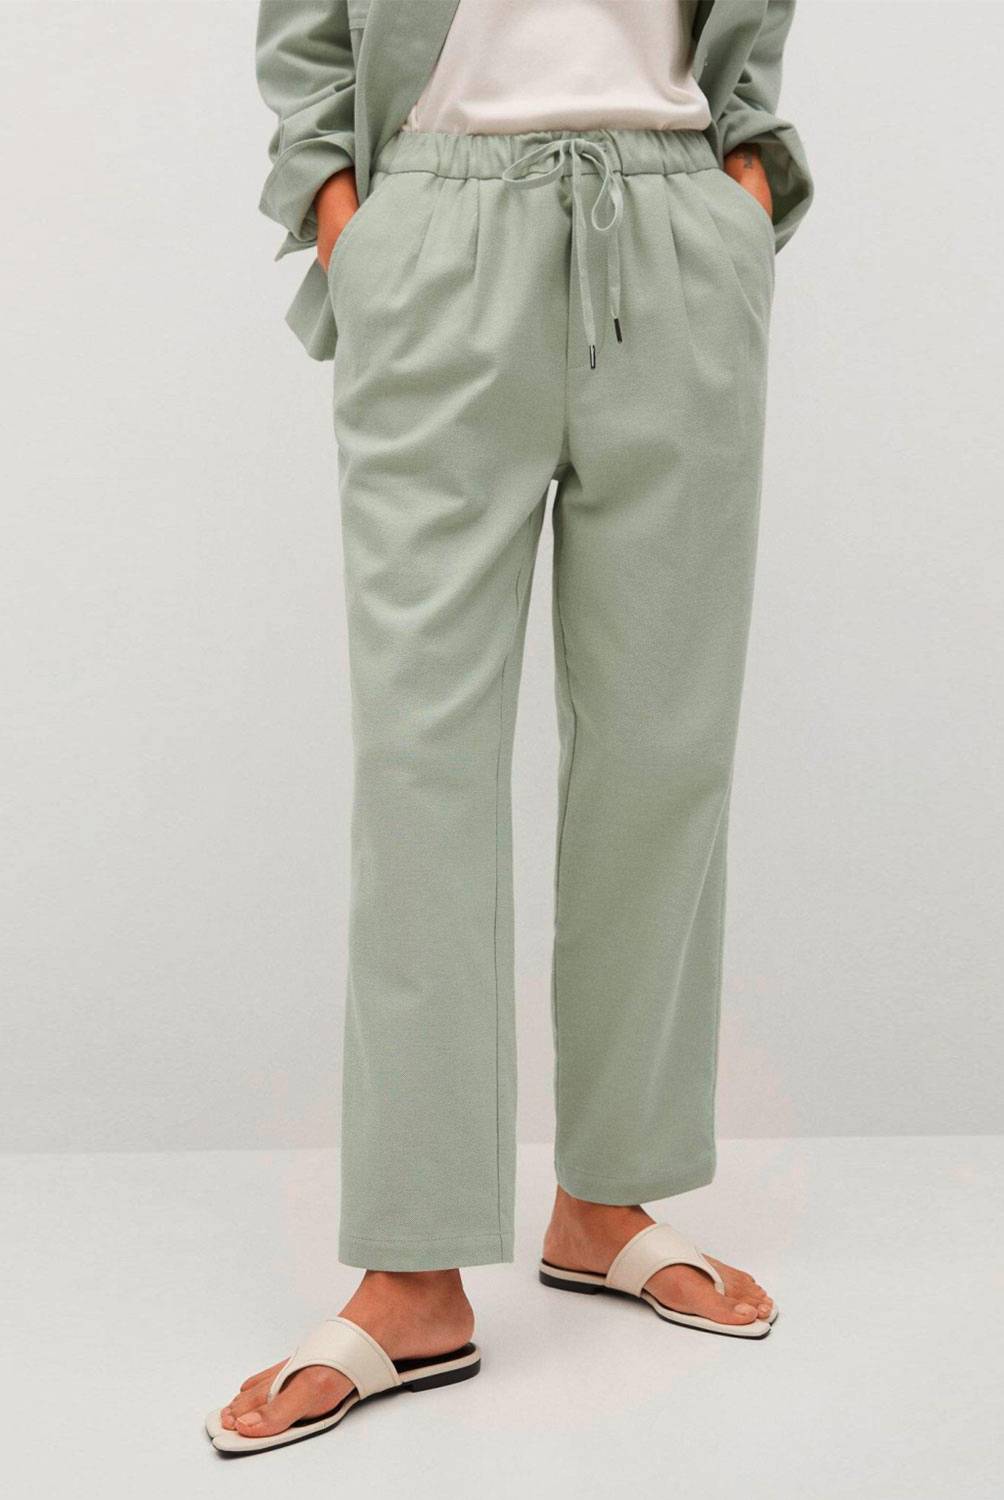 MANGO - Pantalón Slim Tiro Medio 100% Algodón Spring Mujer